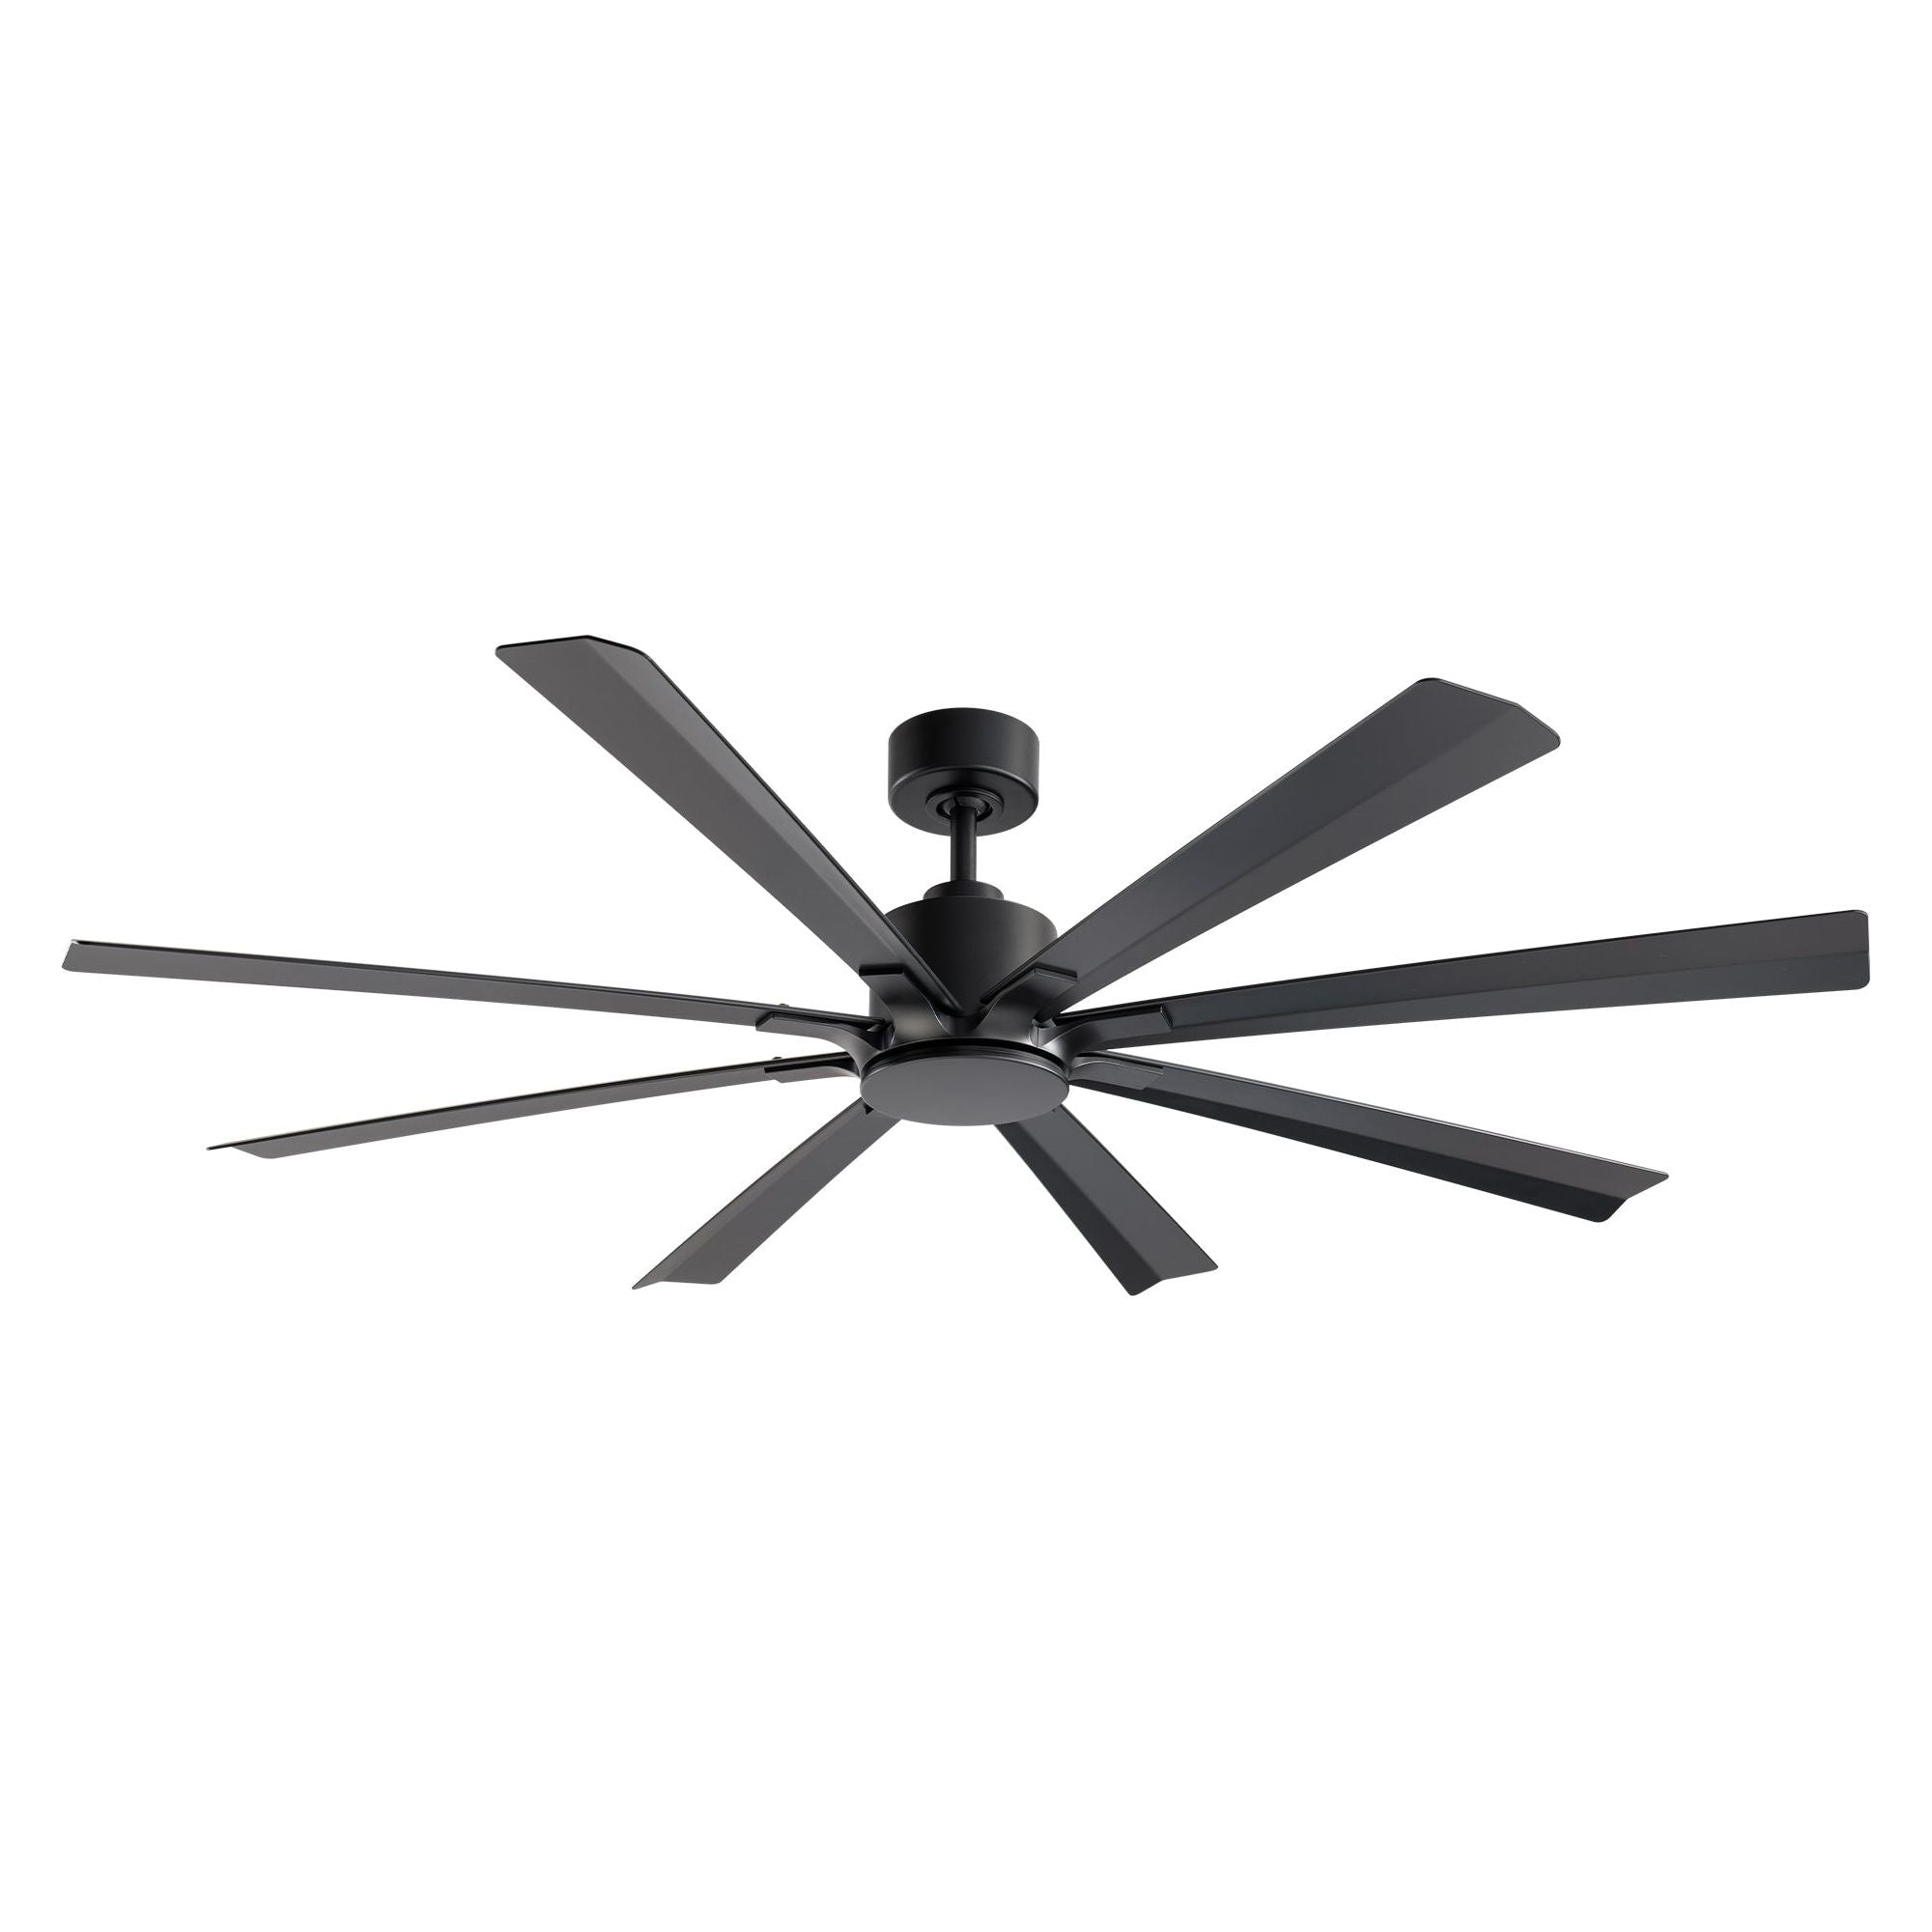 Size Matters Indoor/Outdoor 8-Blade 65" Smart Ceiling Fan